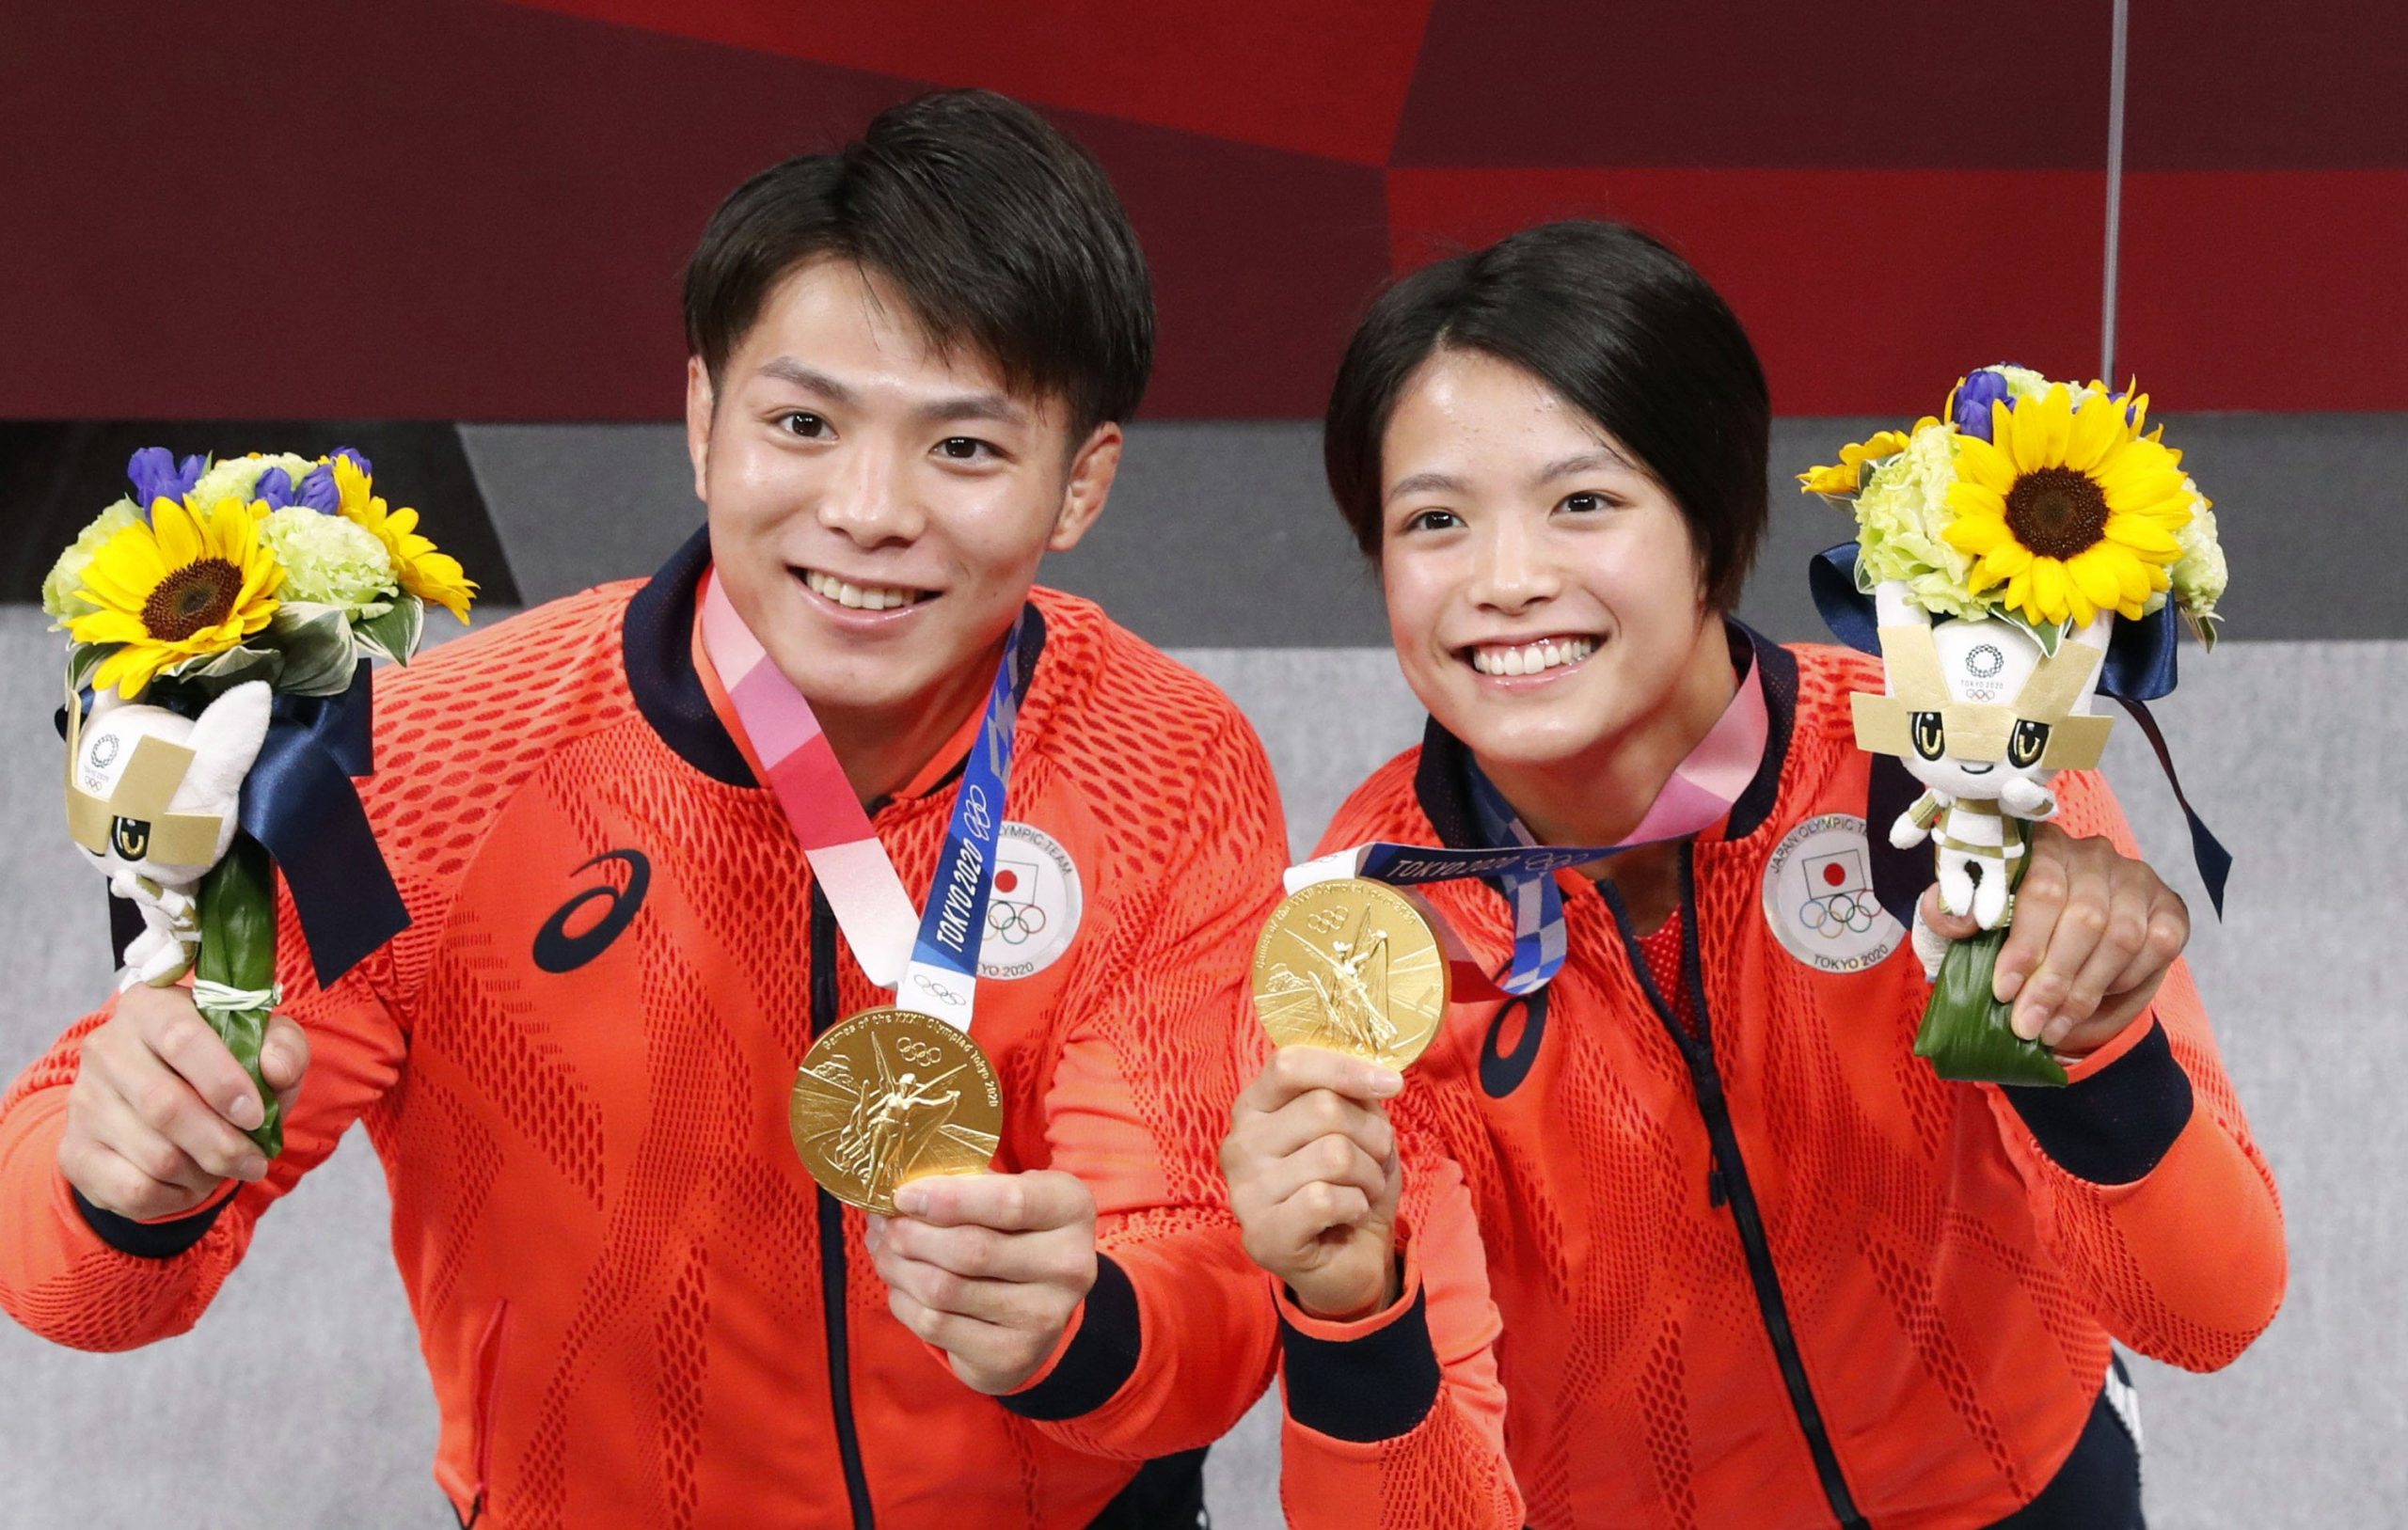 日本人兄弟は柔道で再びオリンピック金メダルを目指す